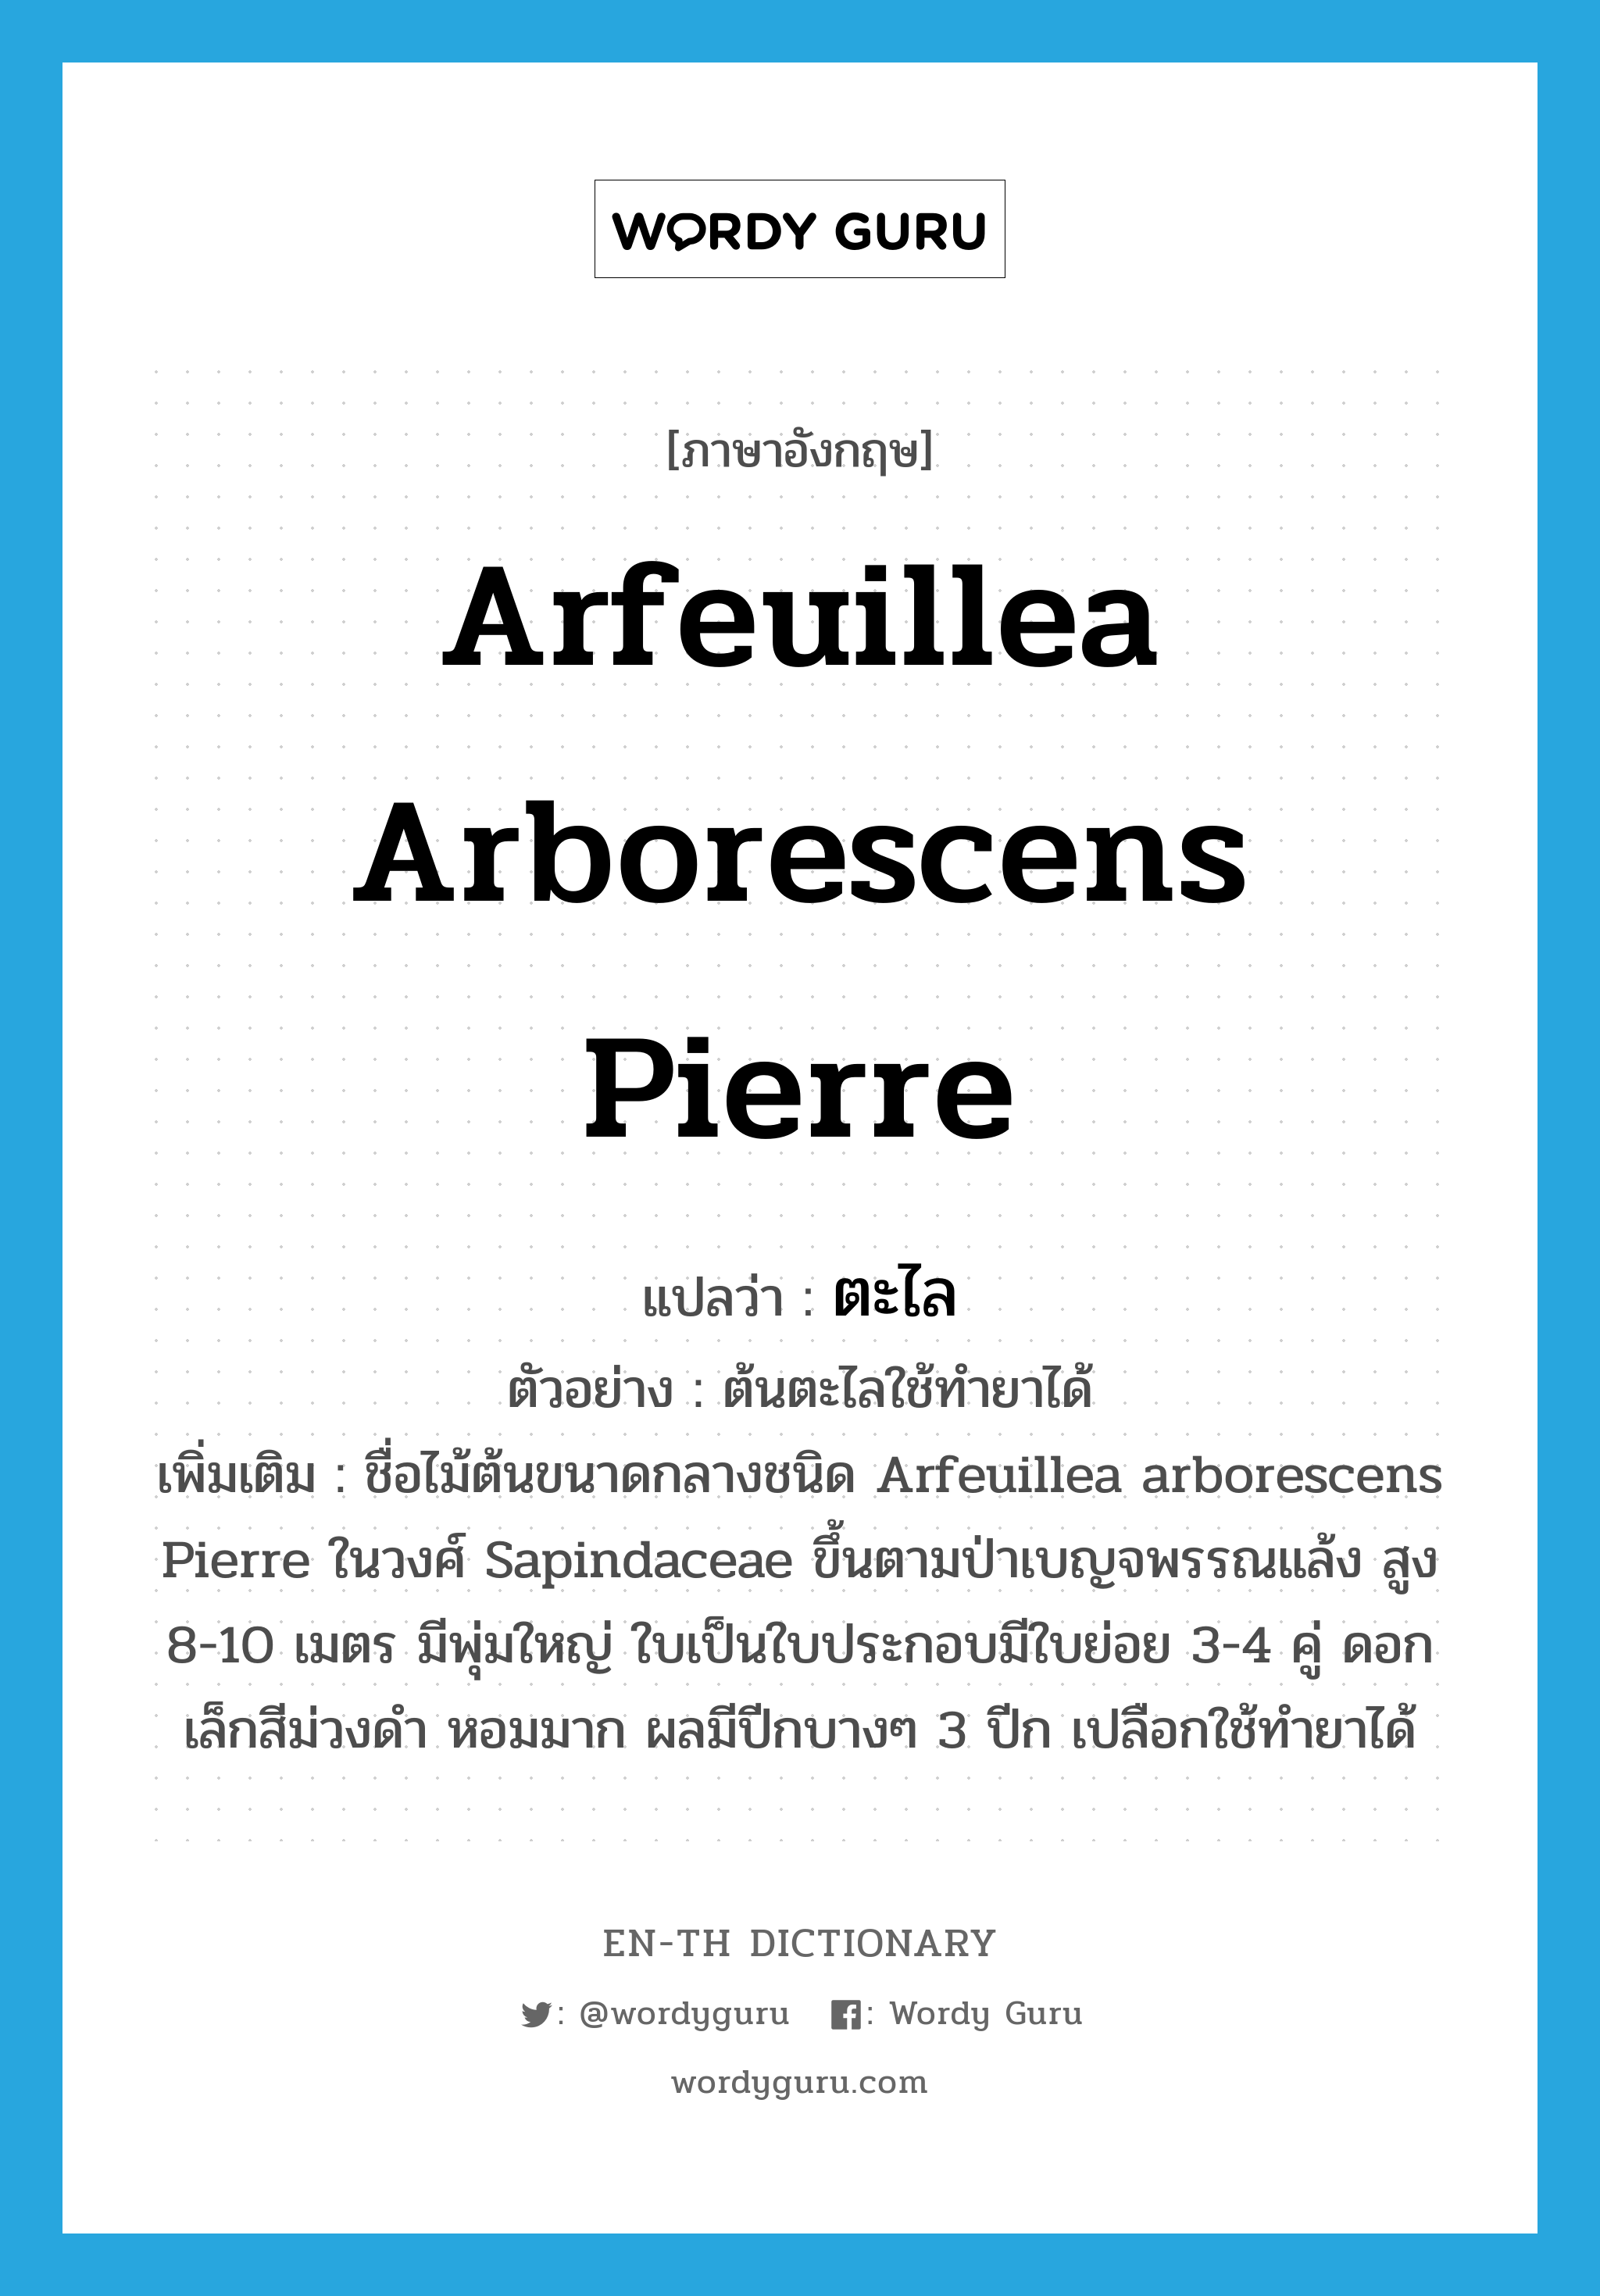 ตะไล ภาษาอังกฤษ?, คำศัพท์ภาษาอังกฤษ ตะไล แปลว่า Arfeuillea arborescens Pierre ประเภท N ตัวอย่าง ต้นตะไลใช้ทำยาได้ เพิ่มเติม ชื่อไม้ต้นขนาดกลางชนิด Arfeuillea arborescens Pierre ในวงศ์ Sapindaceae ขึ้นตามป่าเบญจพรรณแล้ง สูง 8-10 เมตร มีพุ่มใหญ่ ใบเป็นใบประกอบมีใบย่อย 3-4 คู่ ดอกเล็กสีม่วงดำ หอมมาก ผลมีปีกบางๆ 3 ปีก เปลือกใช้ทำยาได้ หมวด N